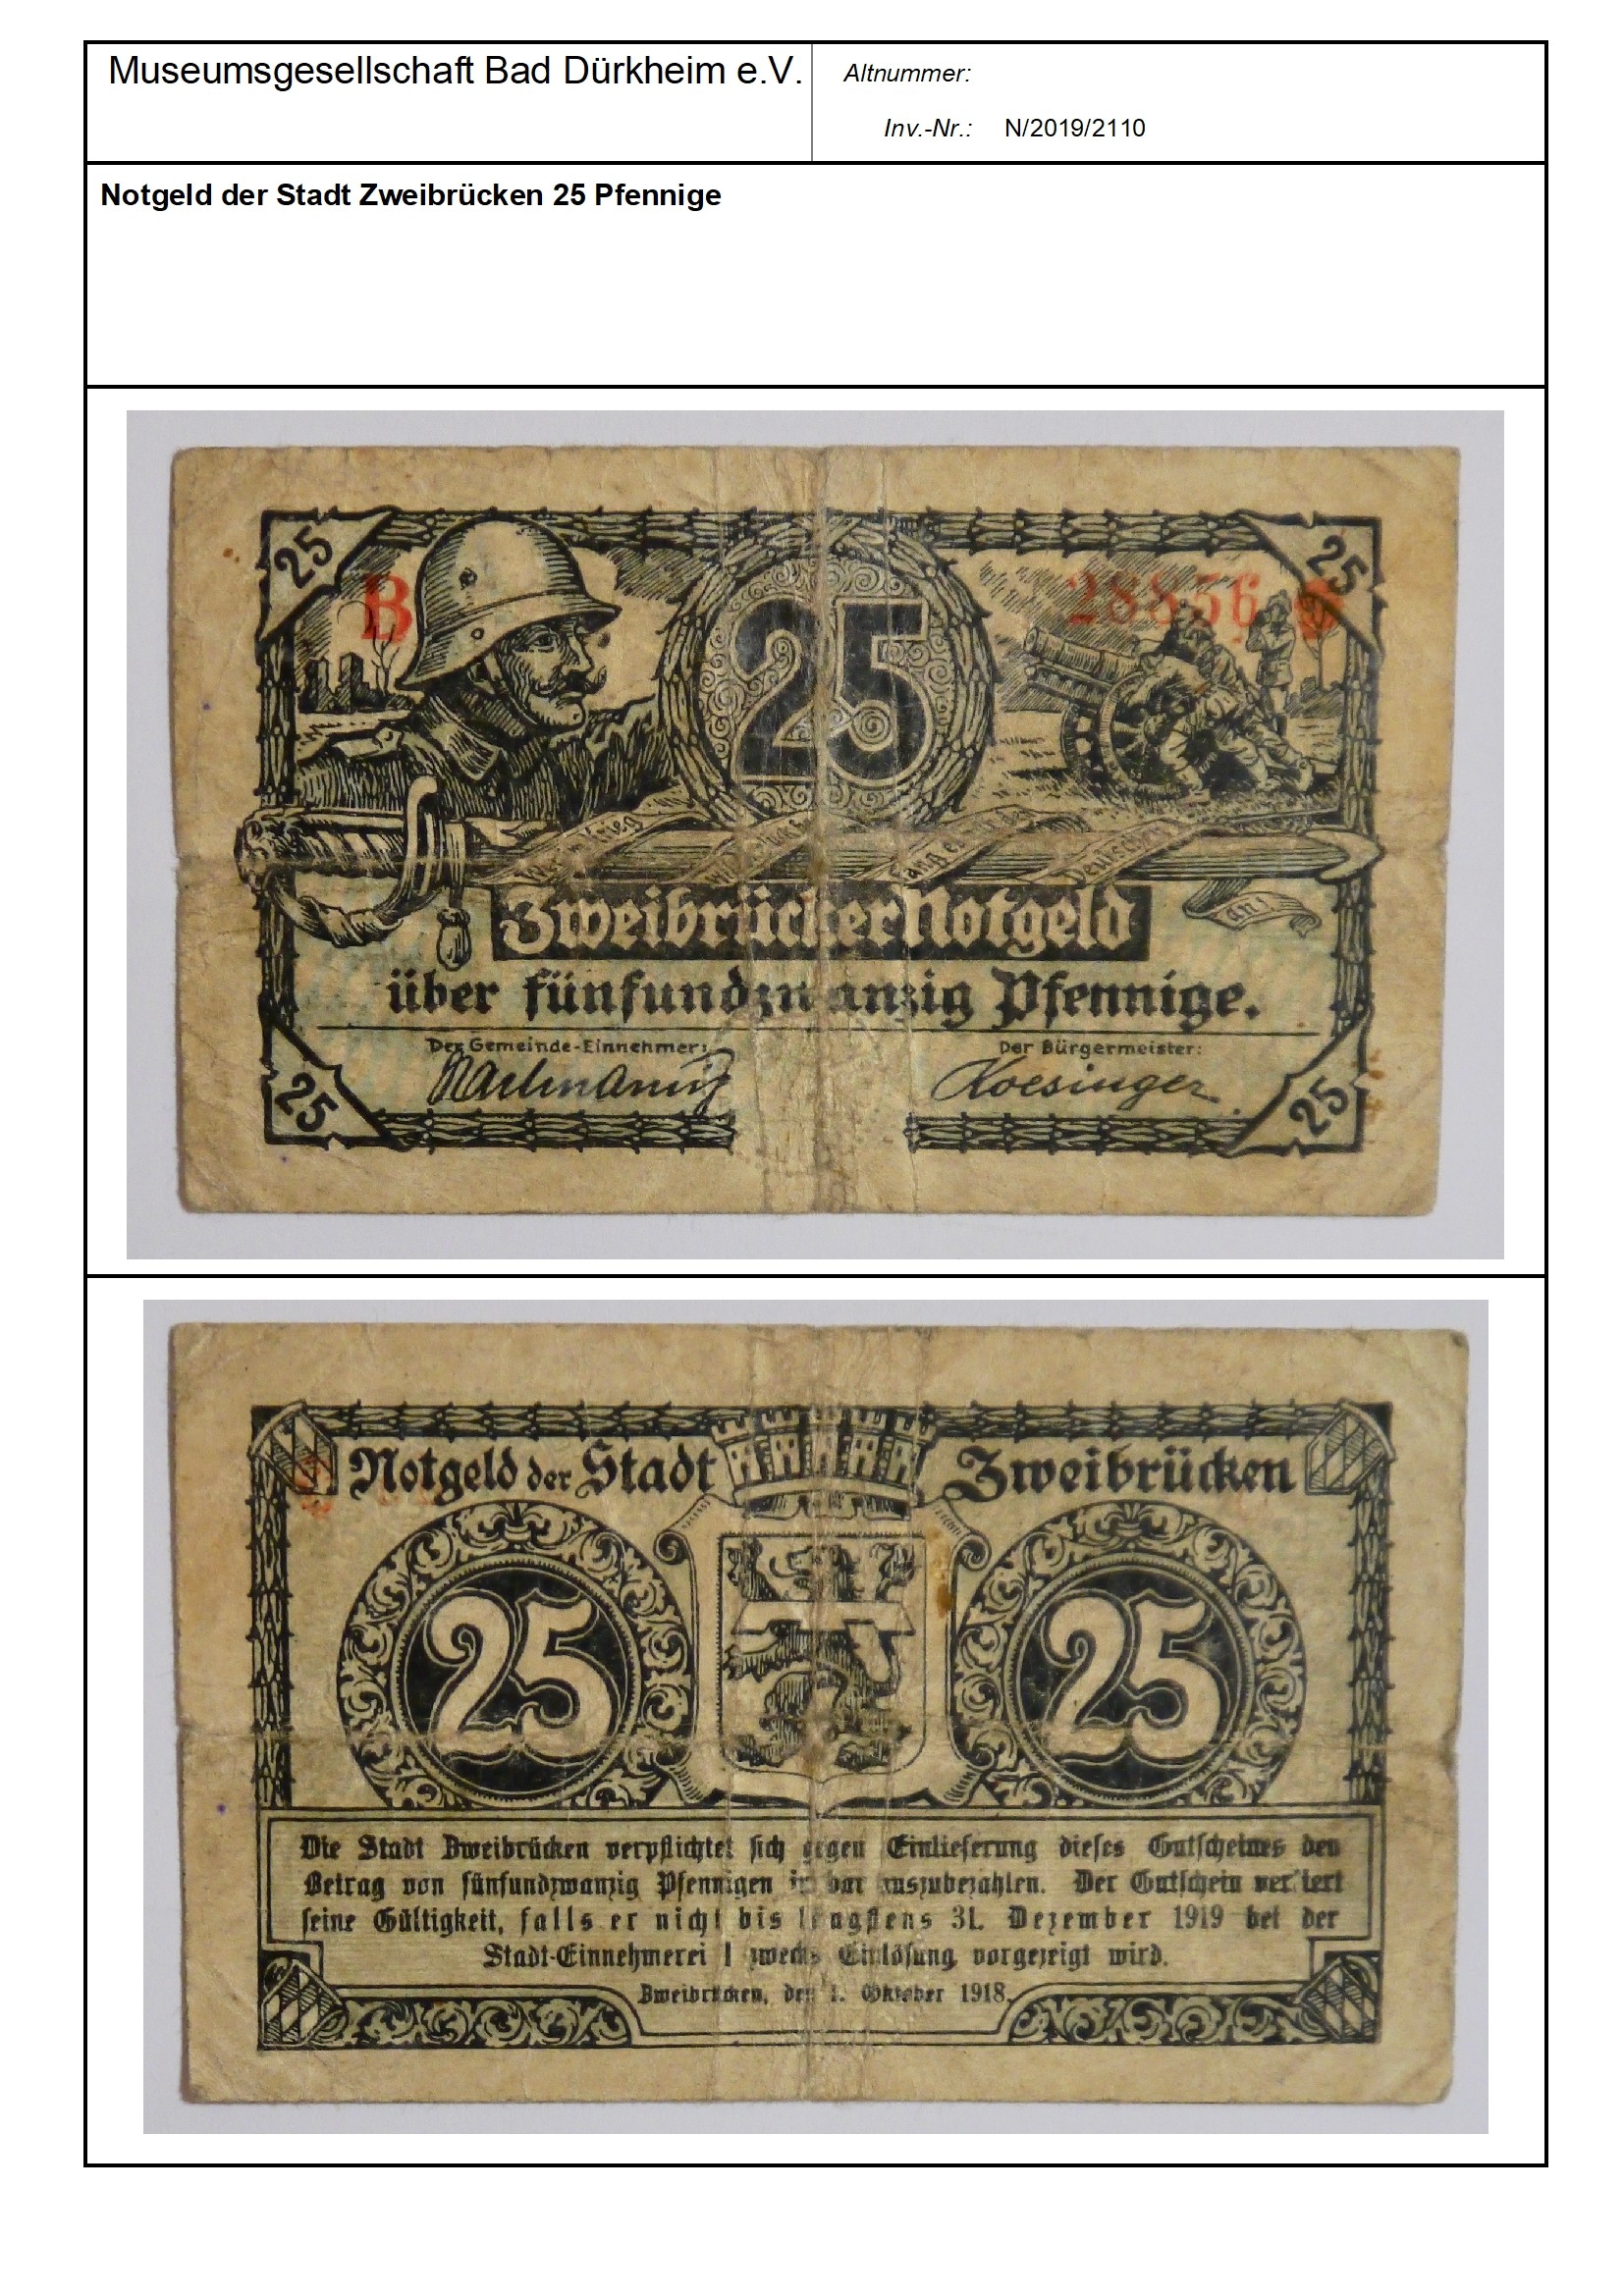 Notgeld der Stadt Zweibrücken 25 Pfennige
Serien-Nummer: B 28856 (Museumsgesellschaft Bad Dürkheim e.V. CC BY-NC-SA)